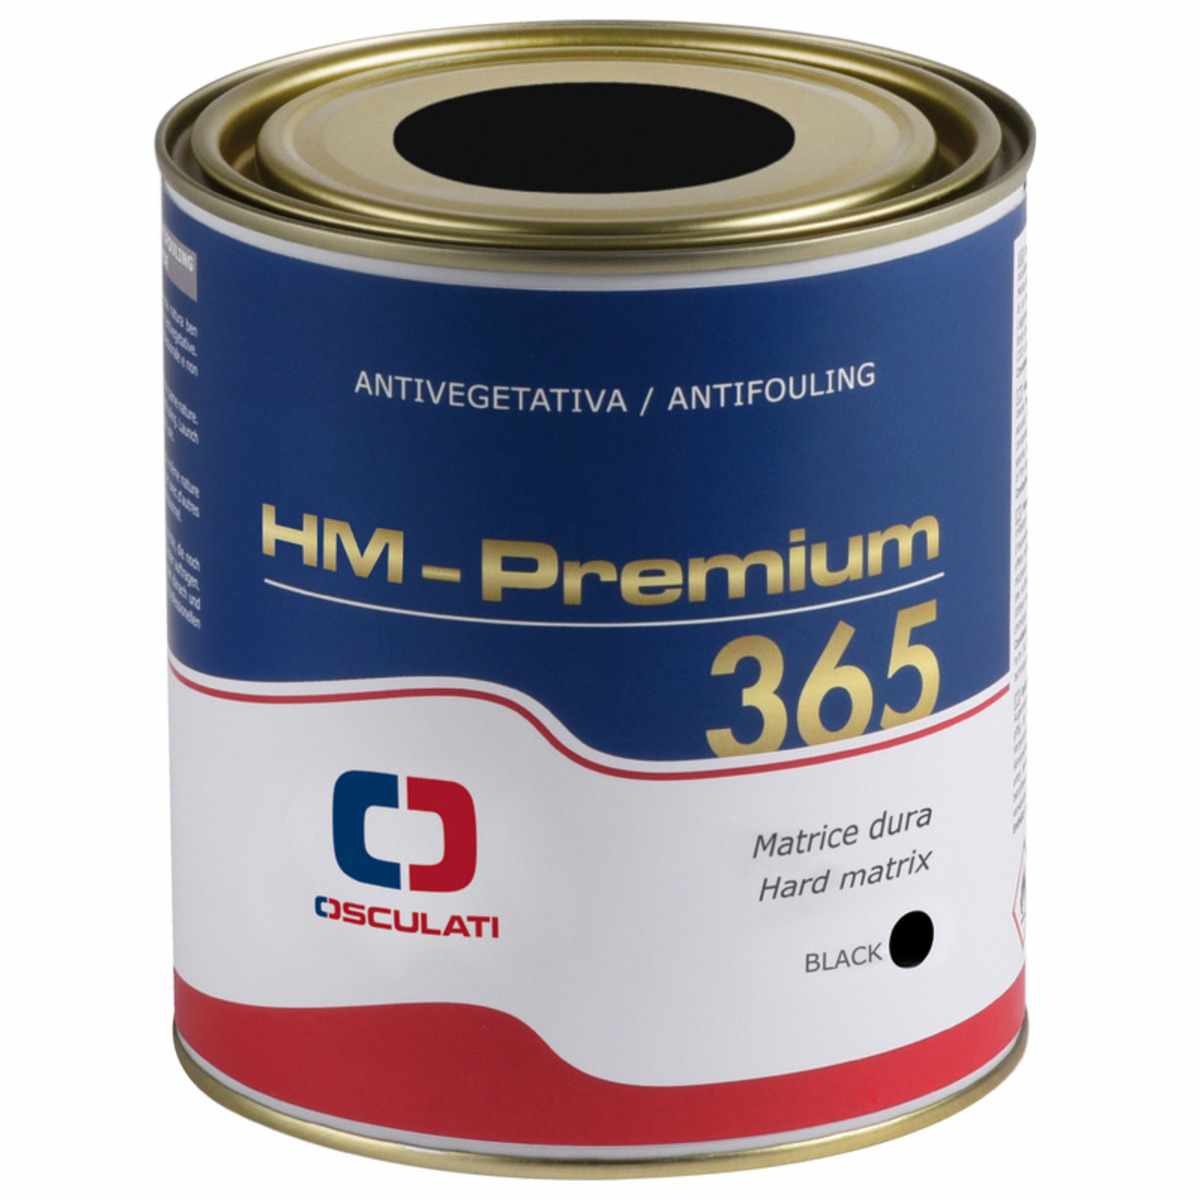 Antifouling HM Premium 365